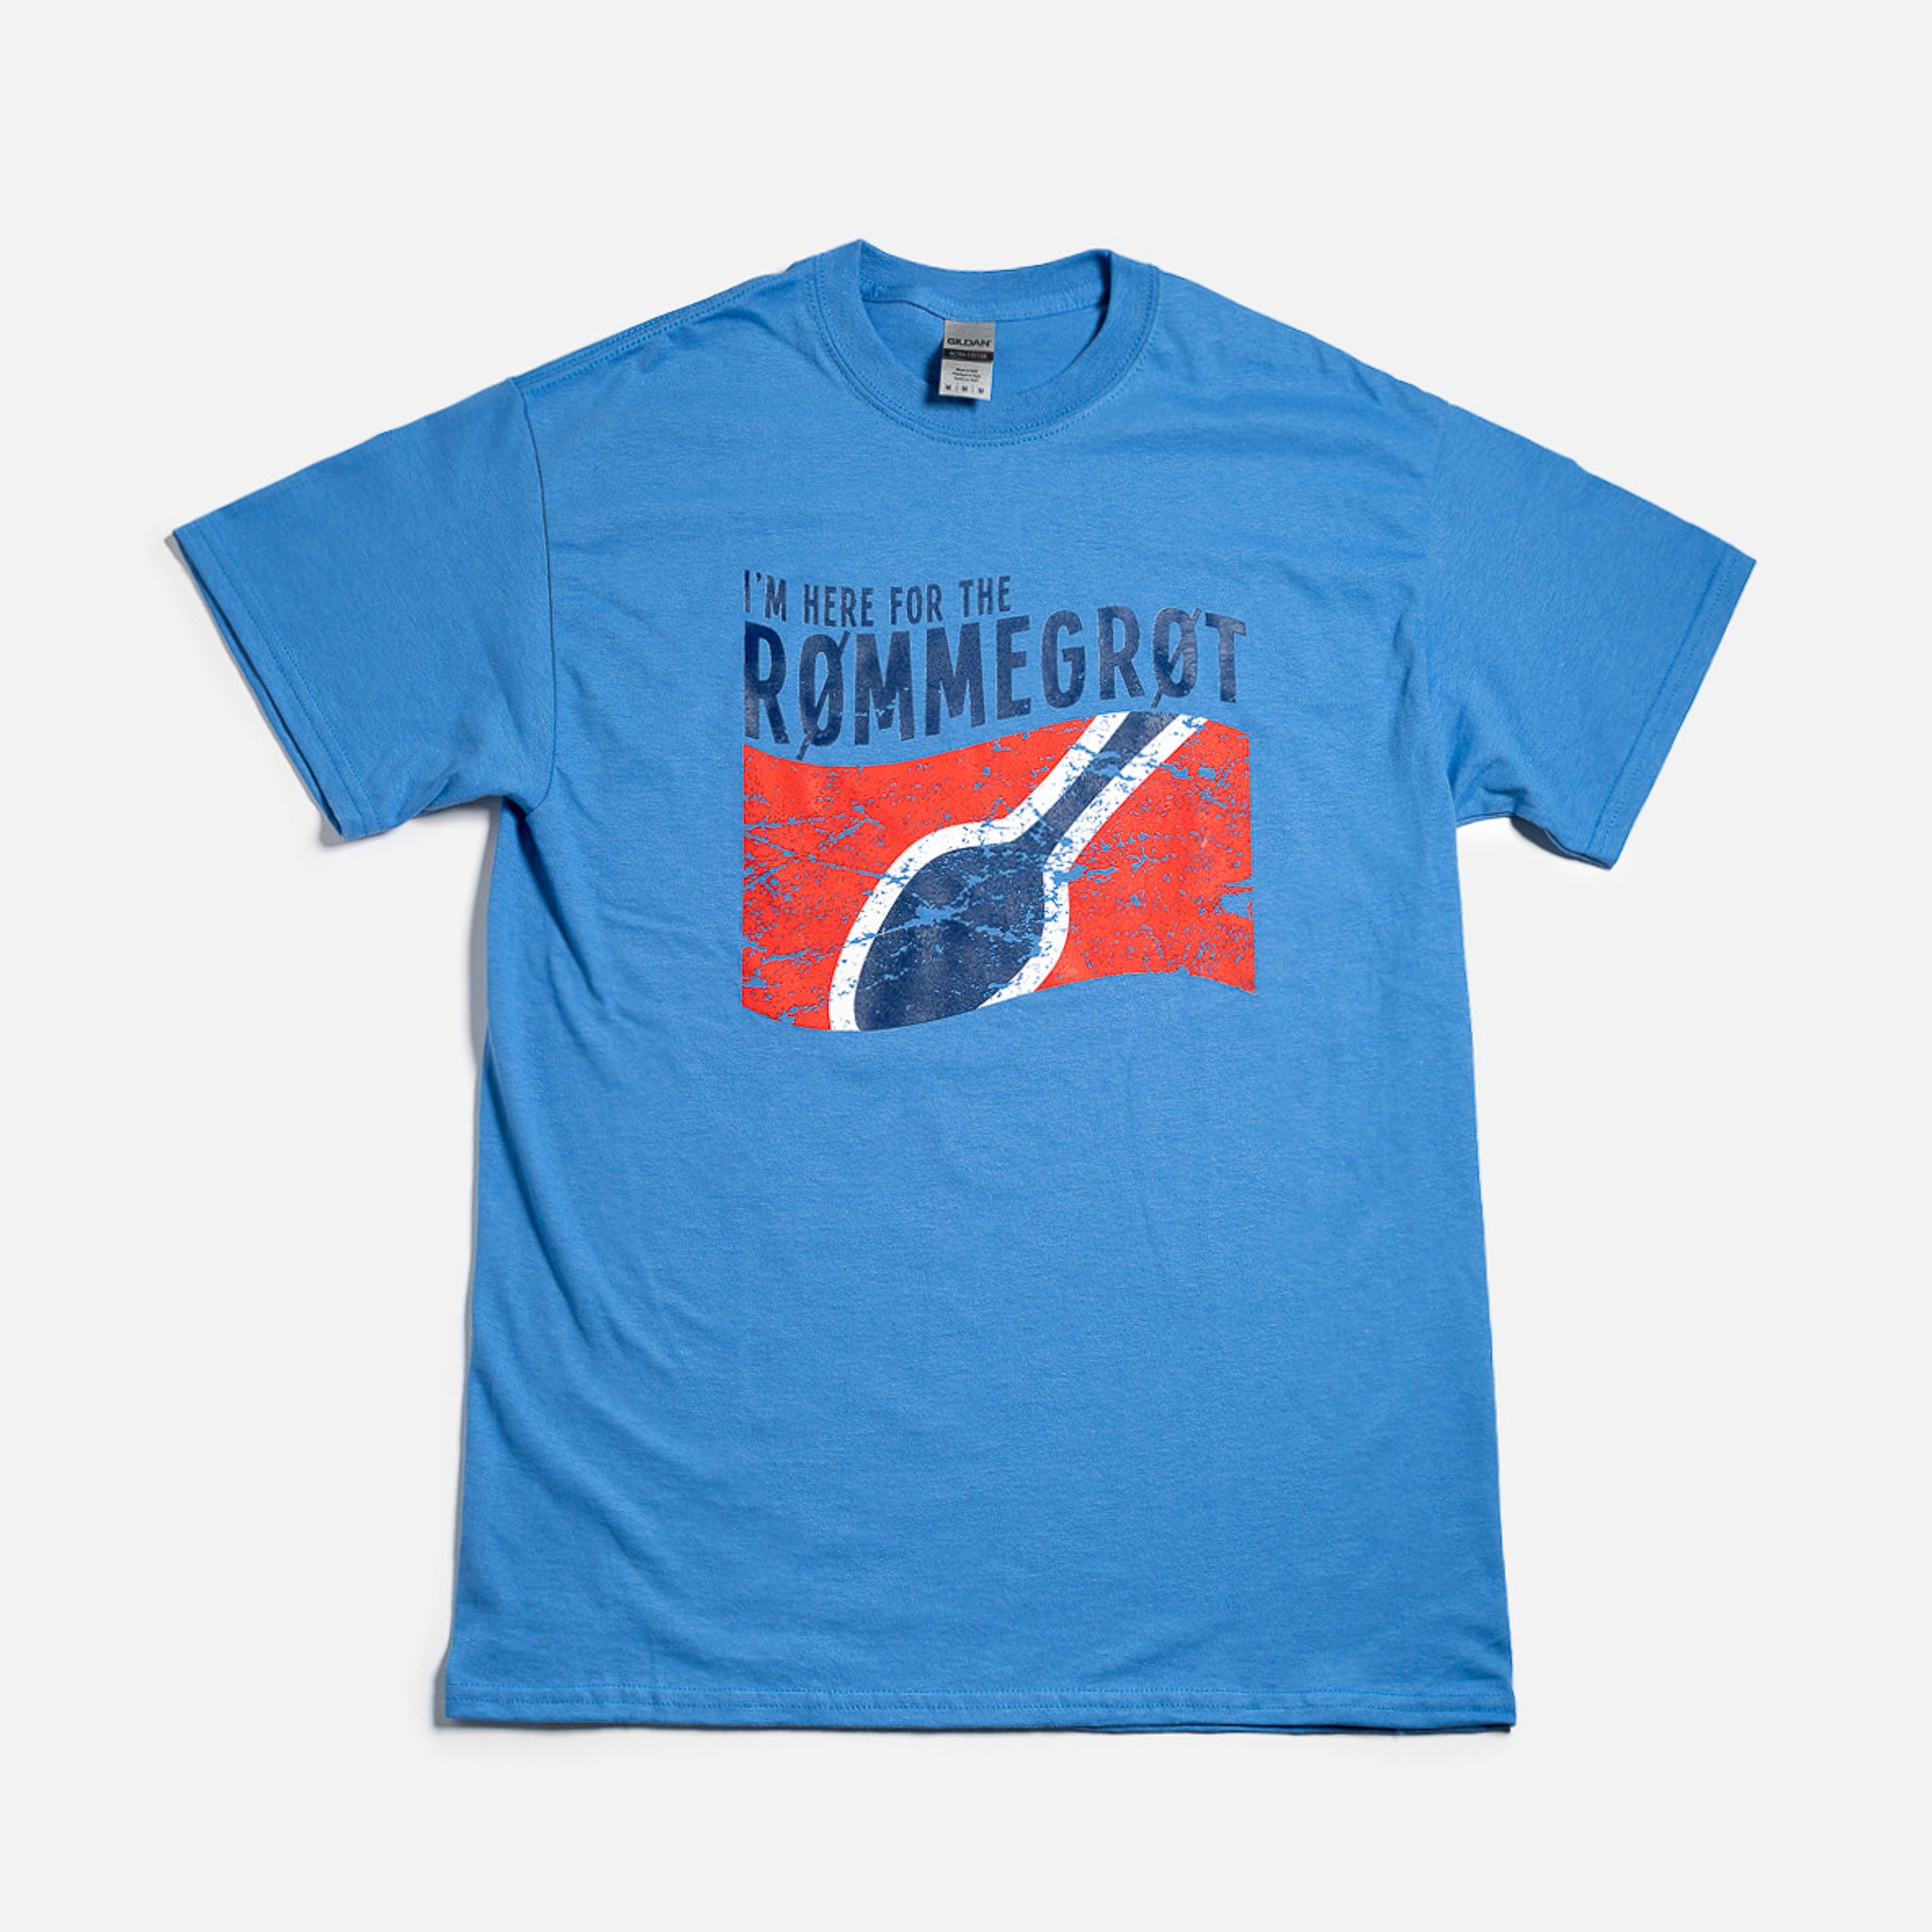 I'm Here for the Rømmegrøt T-shirt